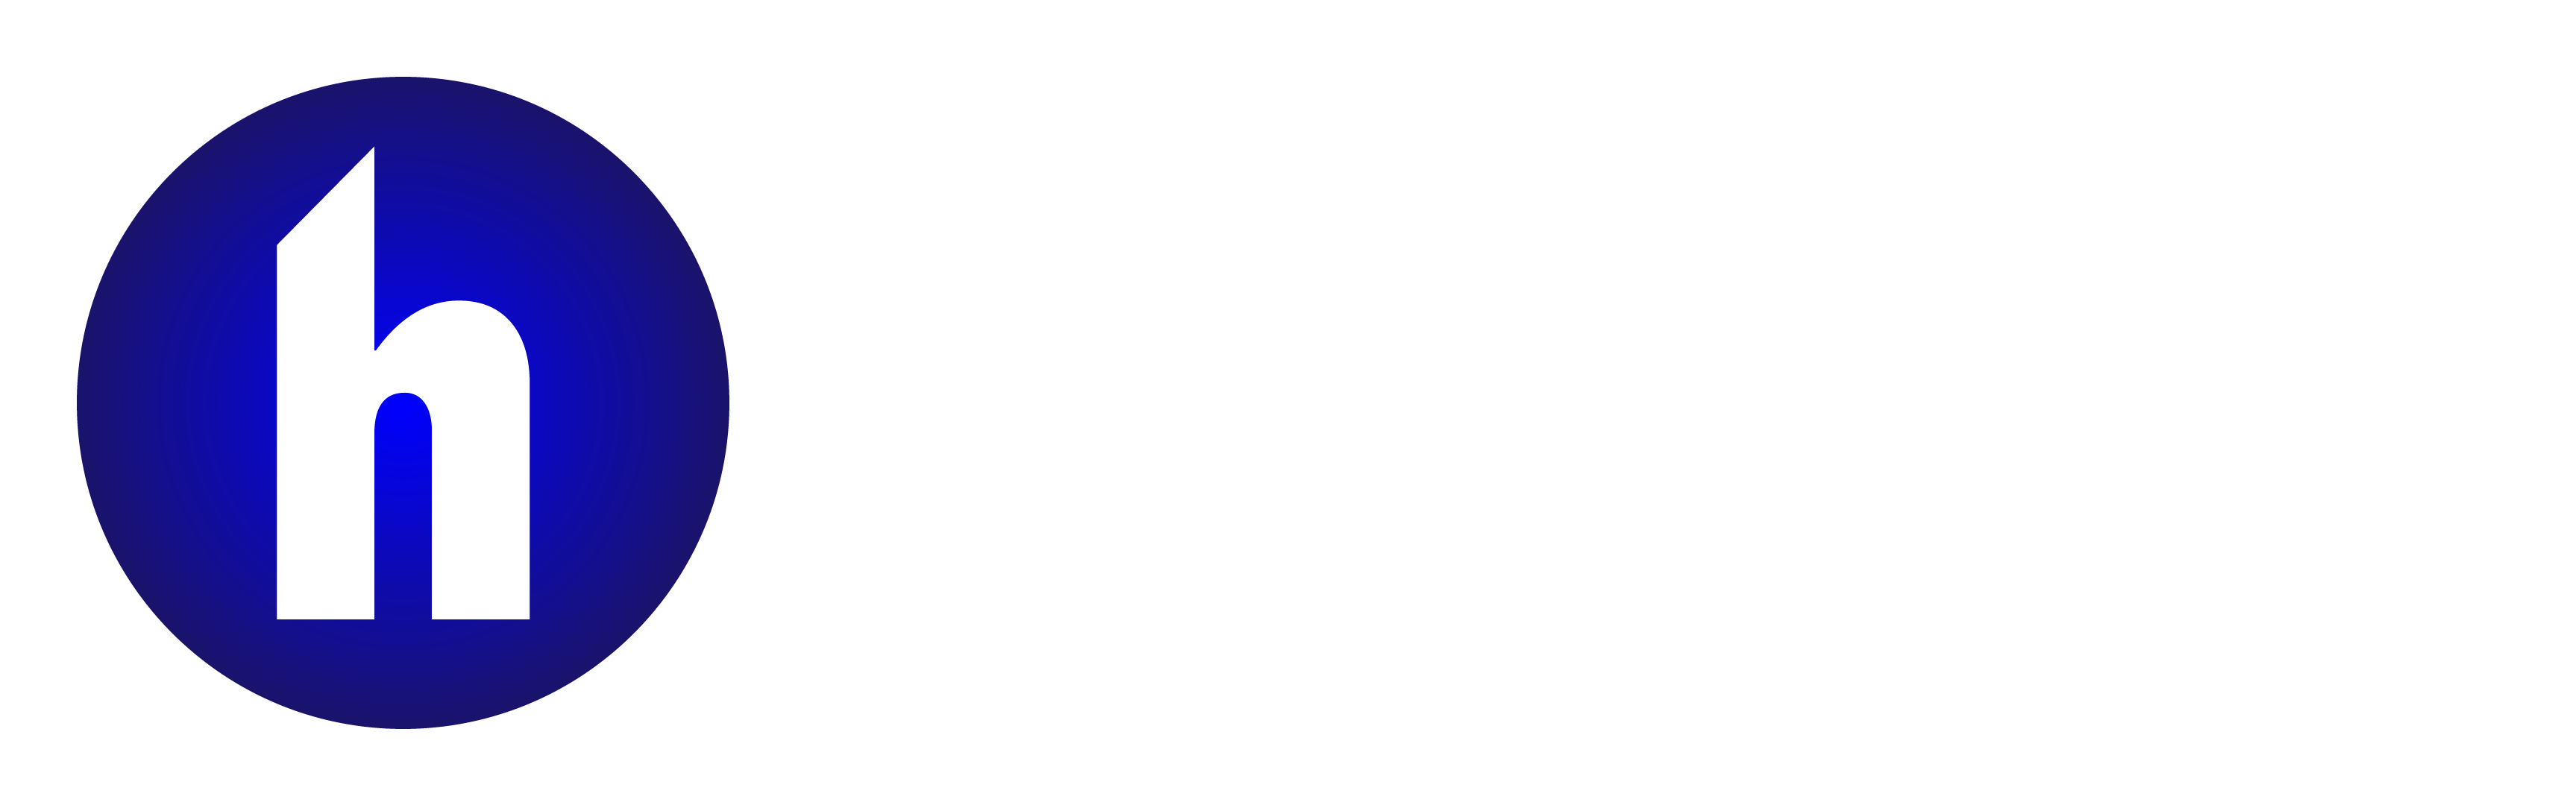 Harmofy Company Limited